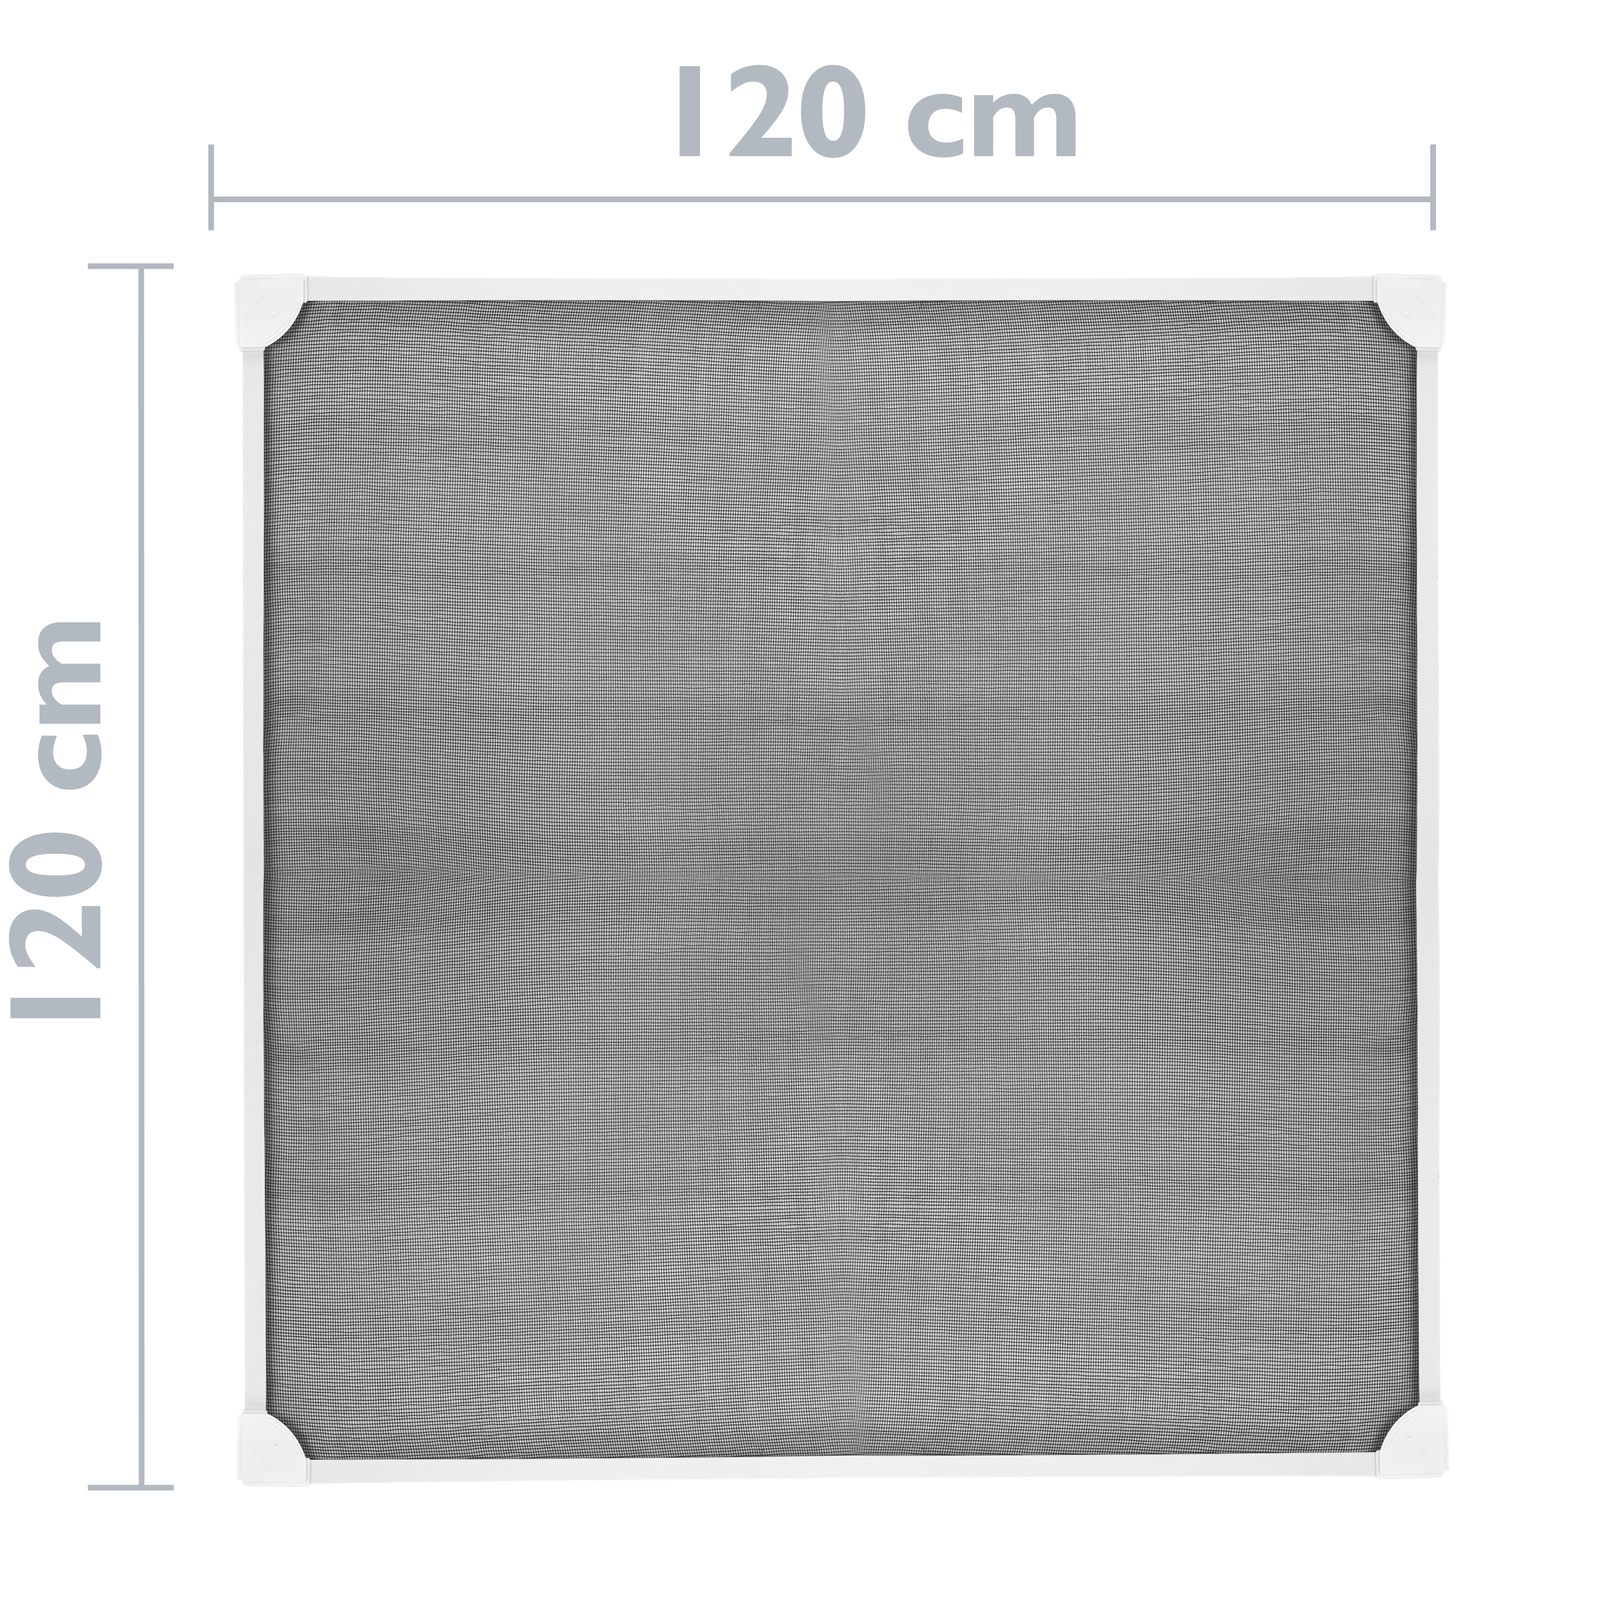 Panel reflectante para radiadores 75 x 1000 cm. Accesorios para radiadores